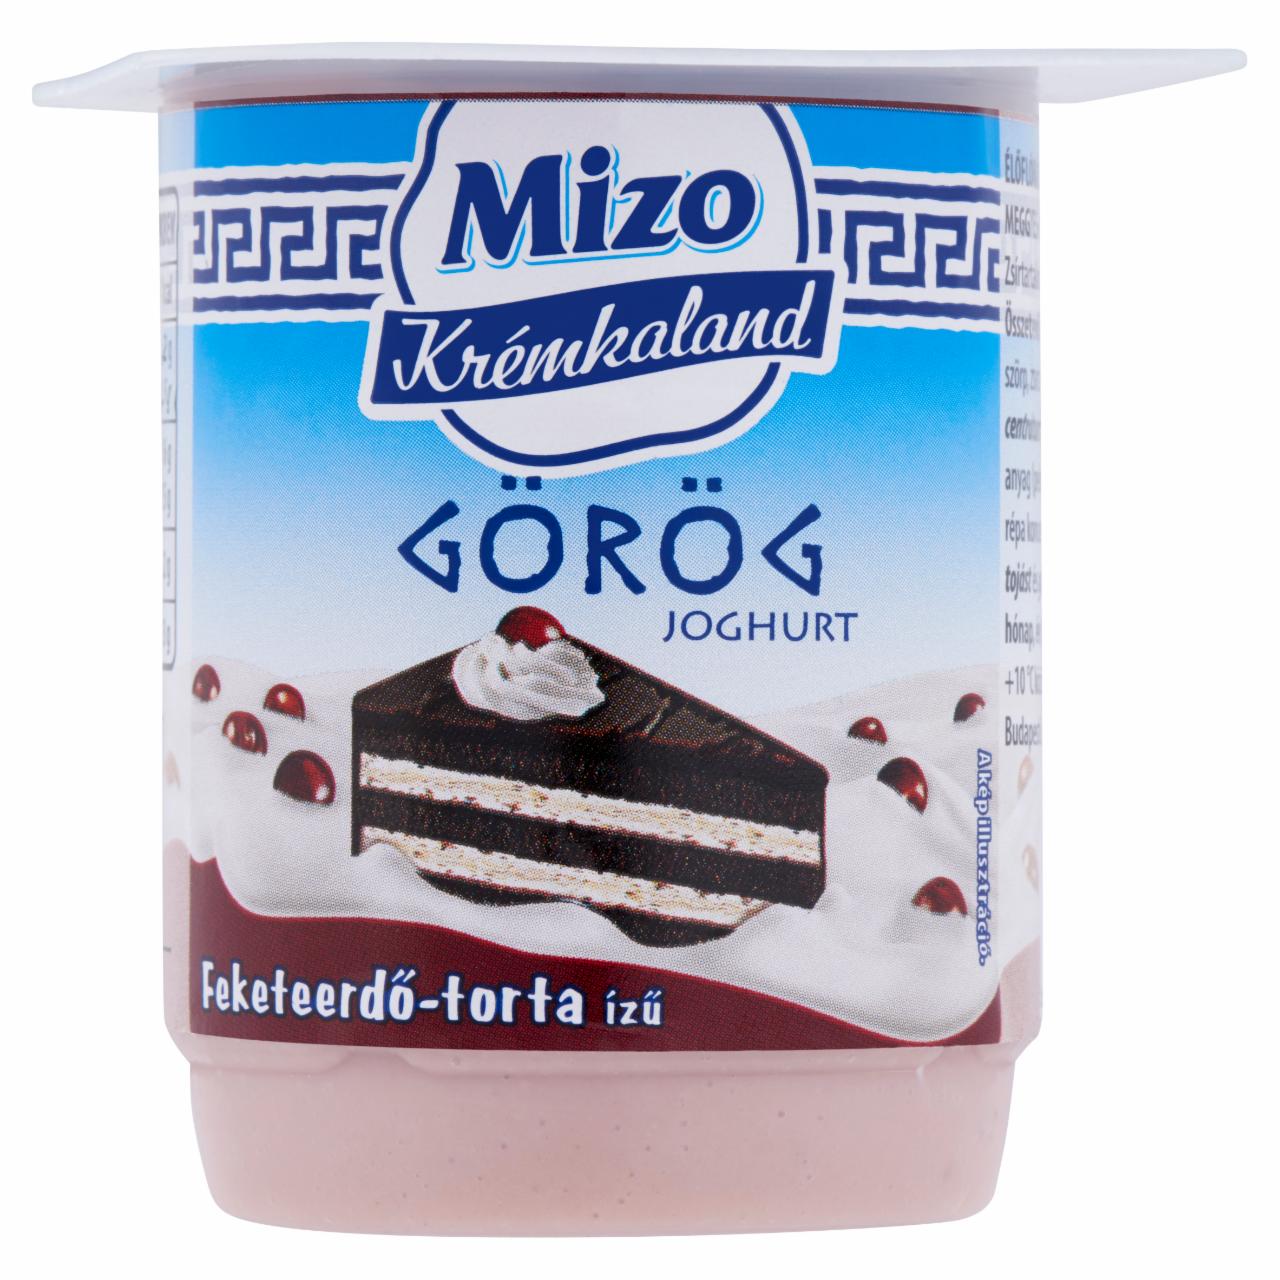 Képek - Mizo Krémkaland élőflórás feketeerdő-torta ízű meggyes-kakaós görög joghurt 125 g